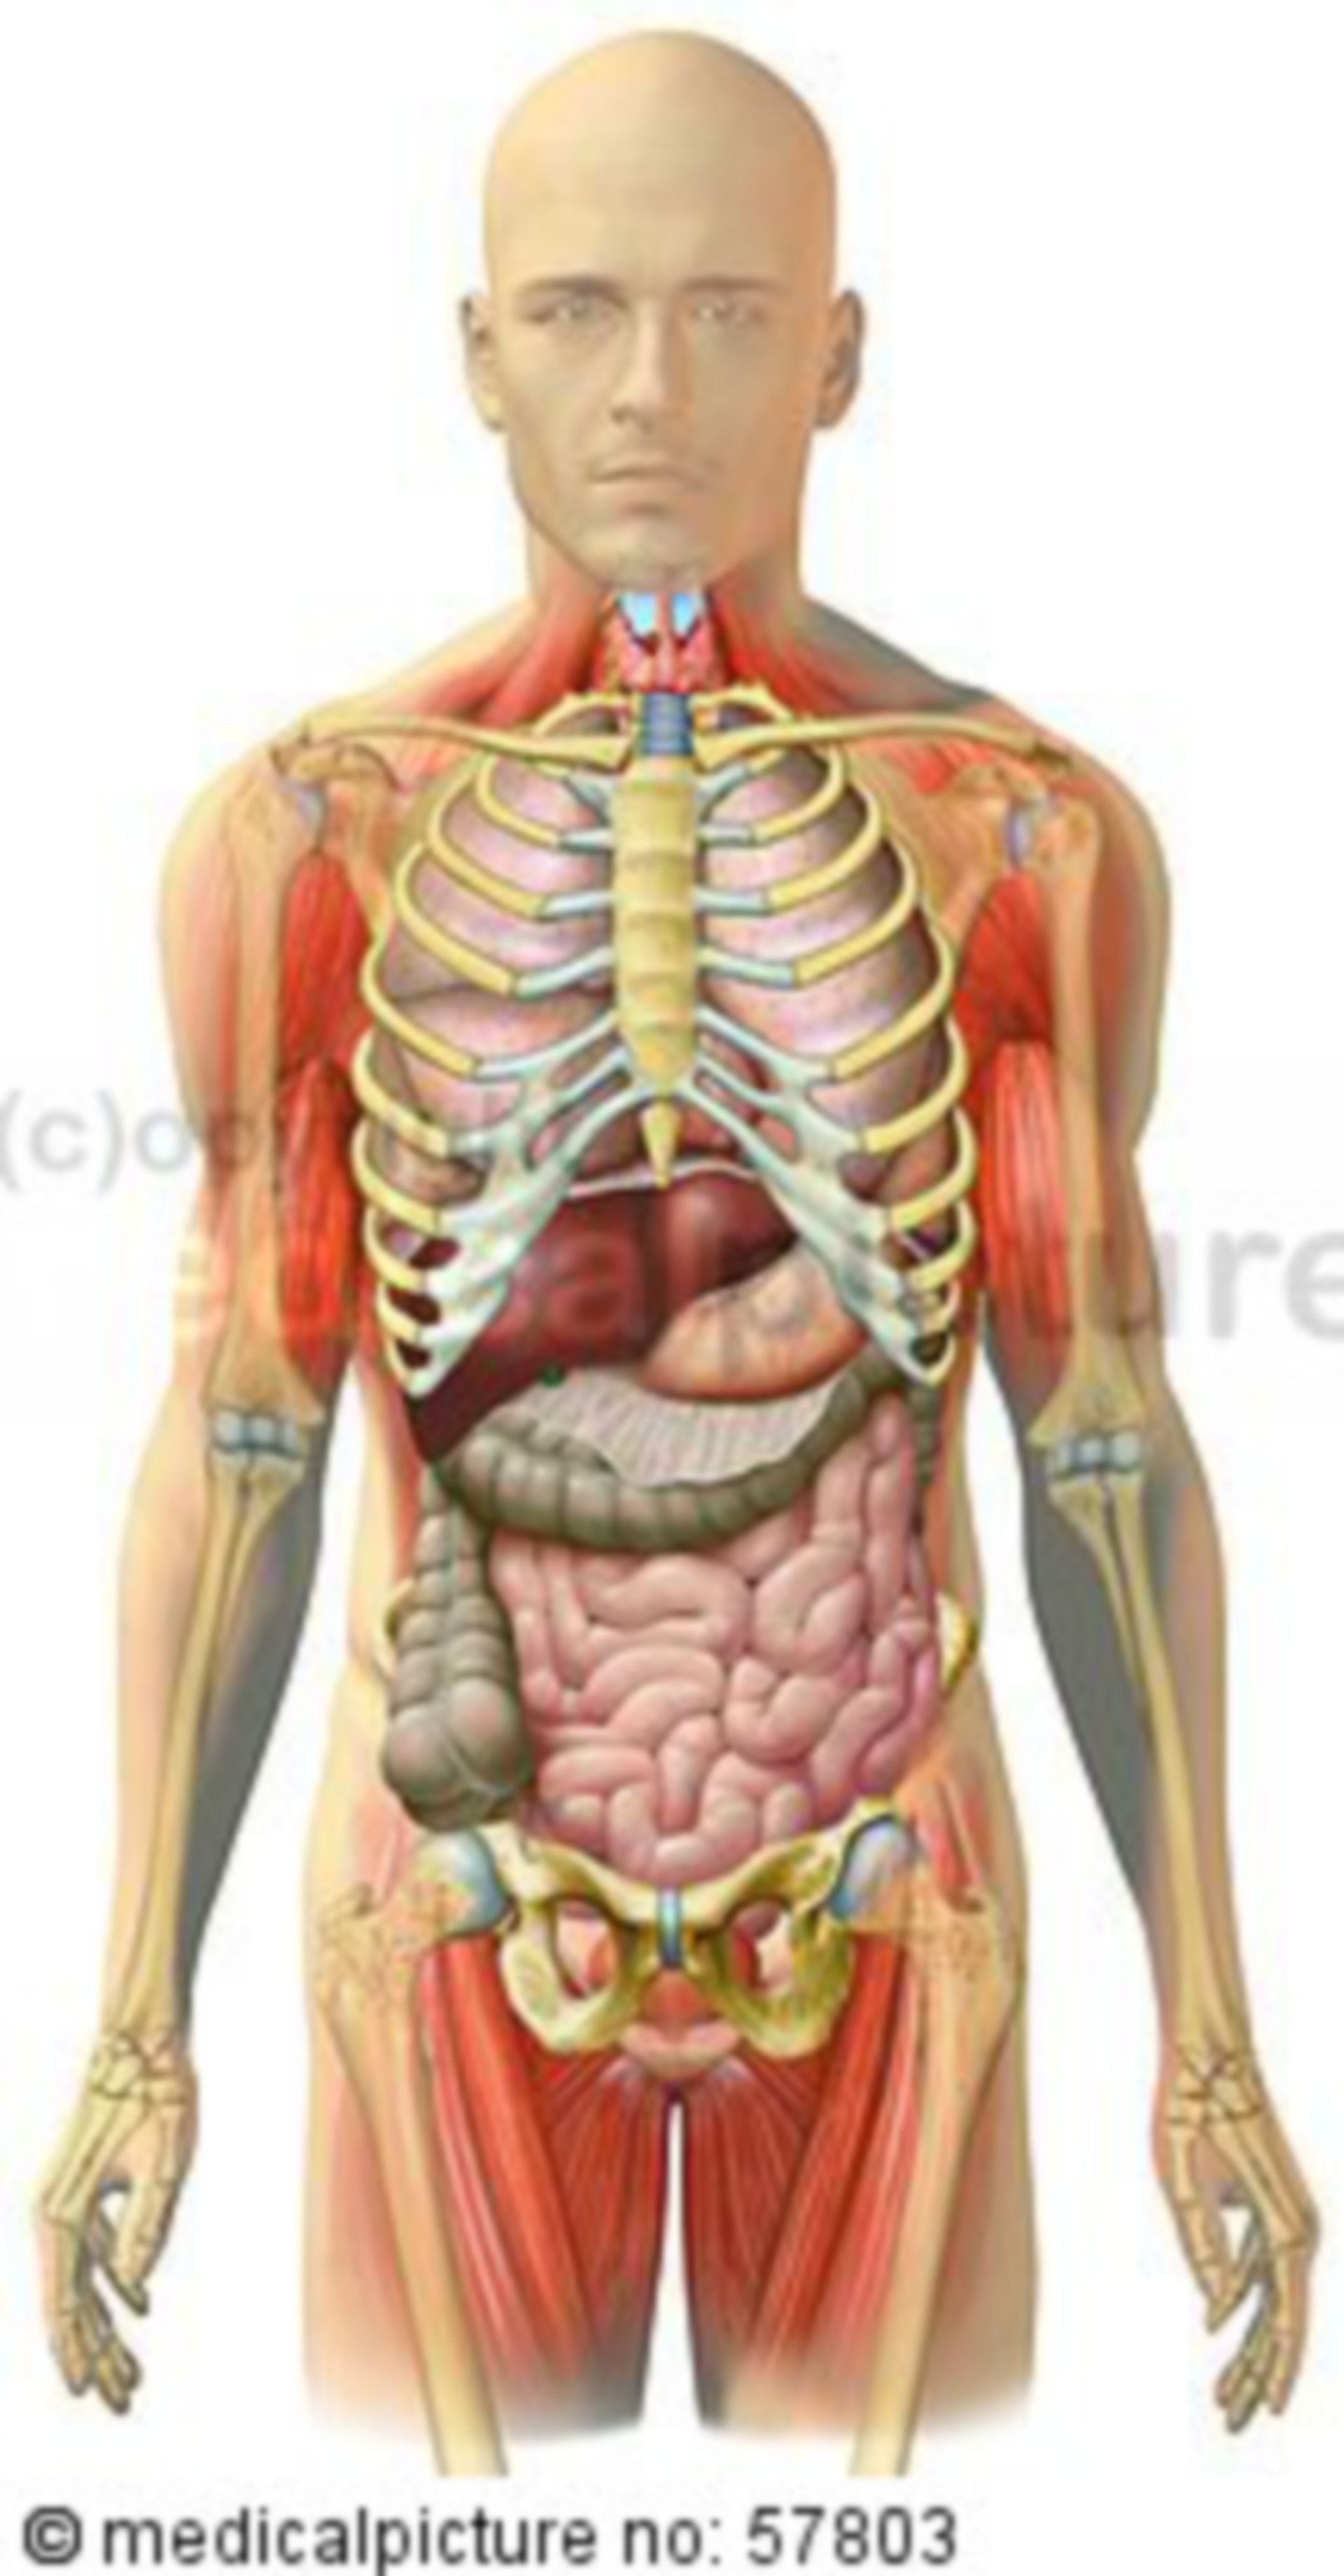 Anatomische Illustrationen - Skelett mit Brust-, Bauch-, Beckeneingeweide und Skelettmuskulatur